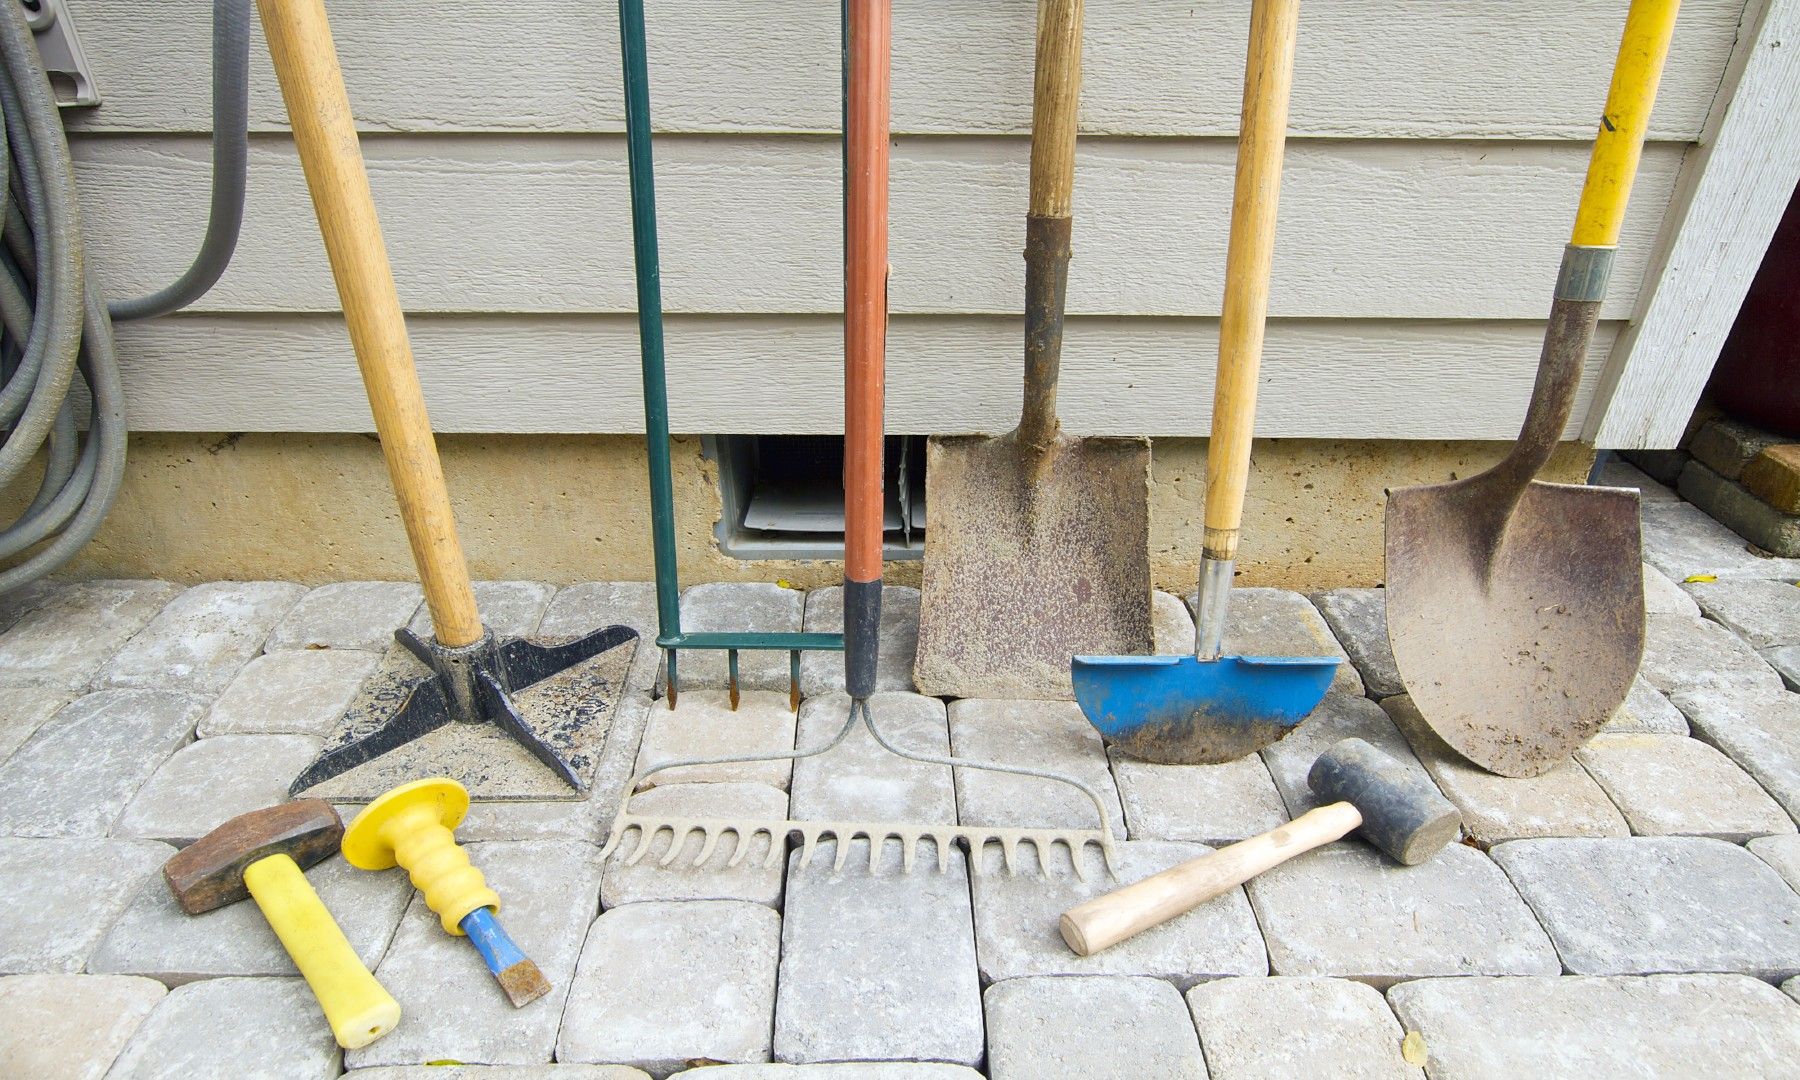 rakes shovels and assorted yard tools